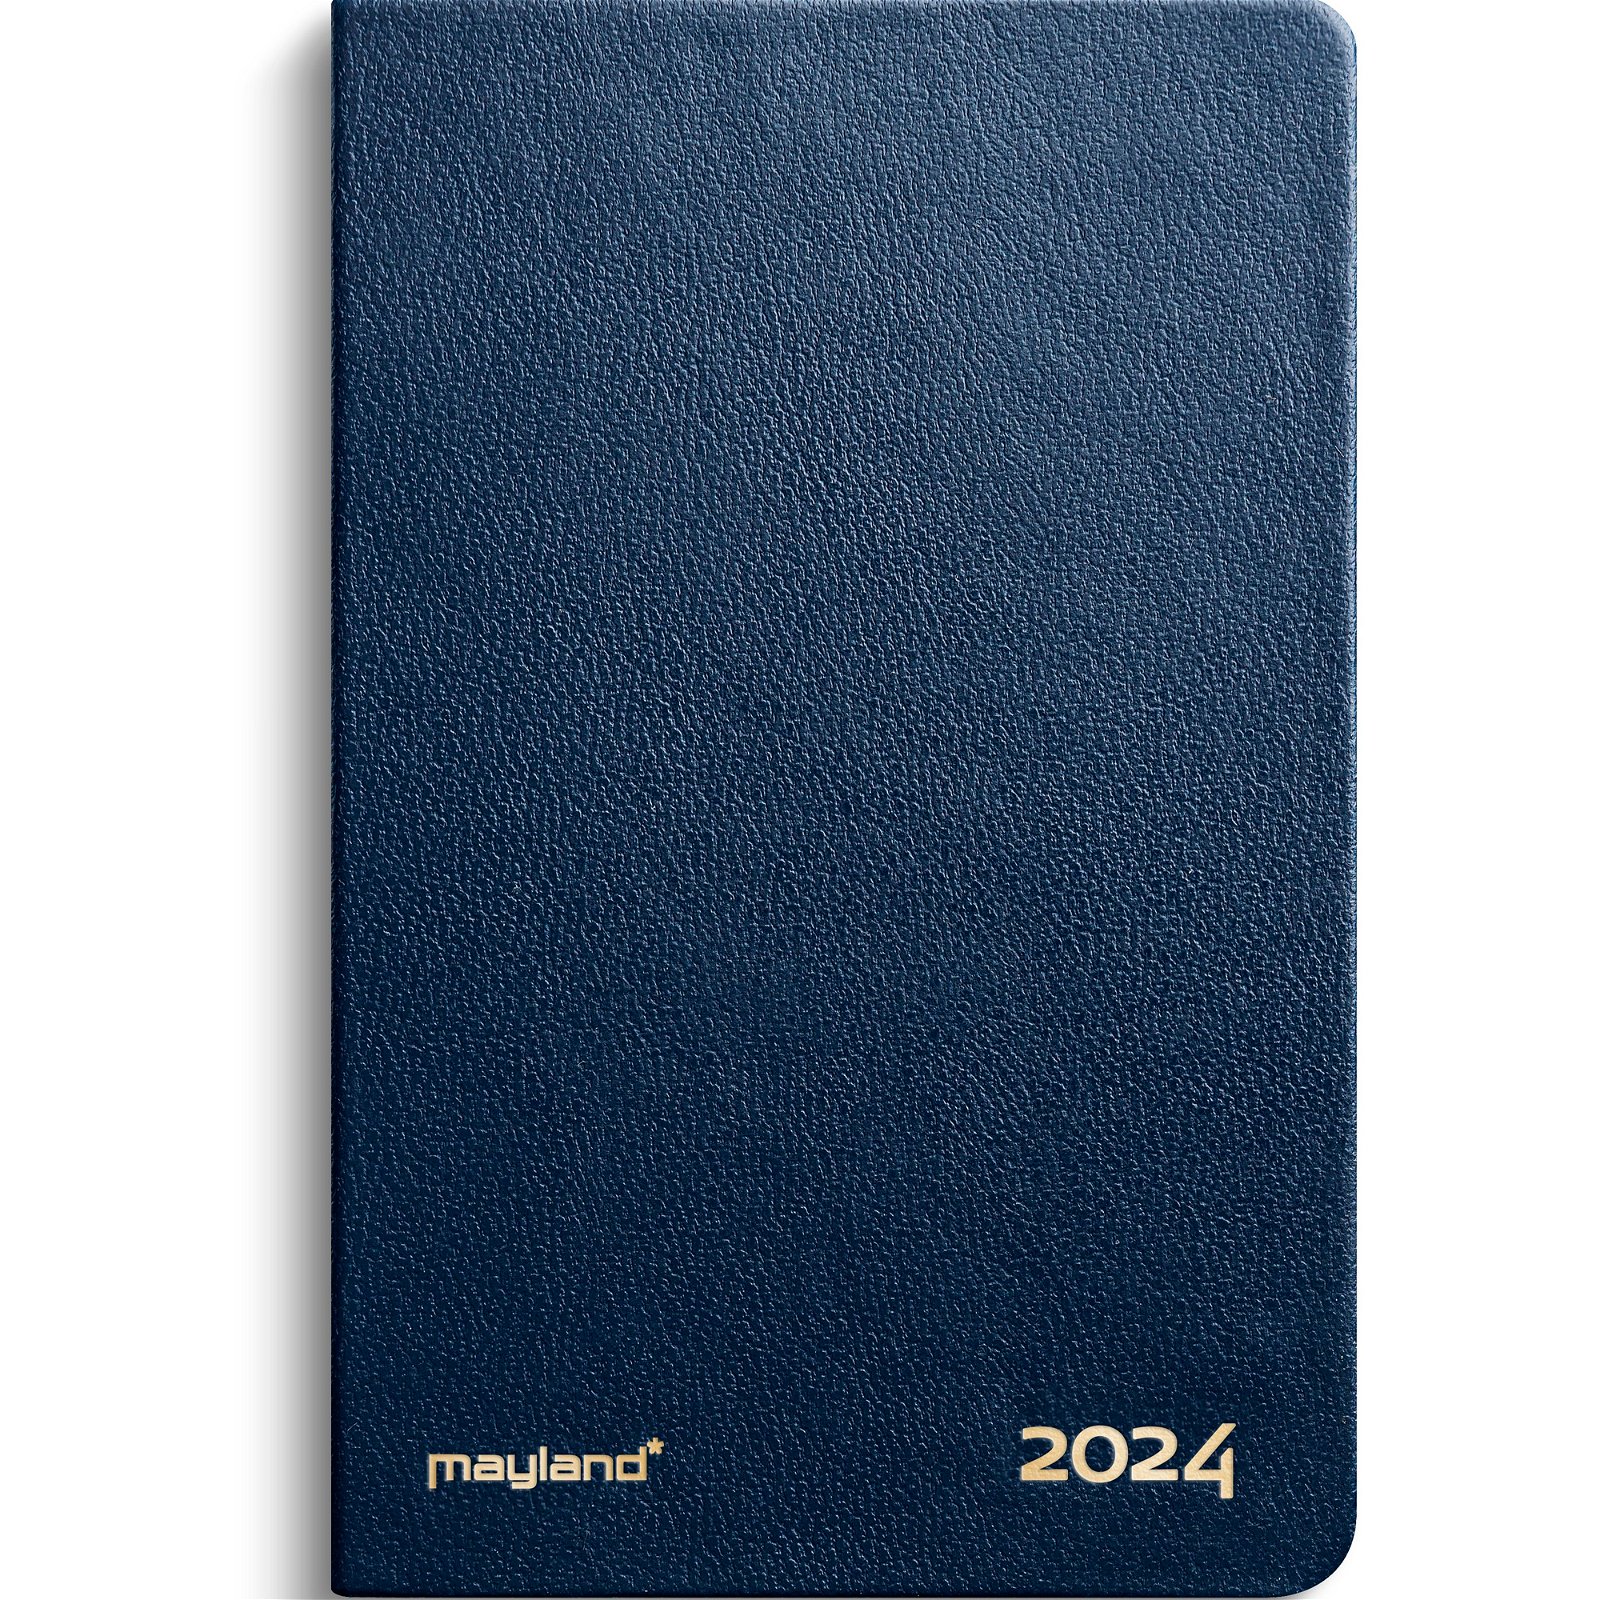 Mayland 2024 24162000 lommekalender 12x7,5cm blå